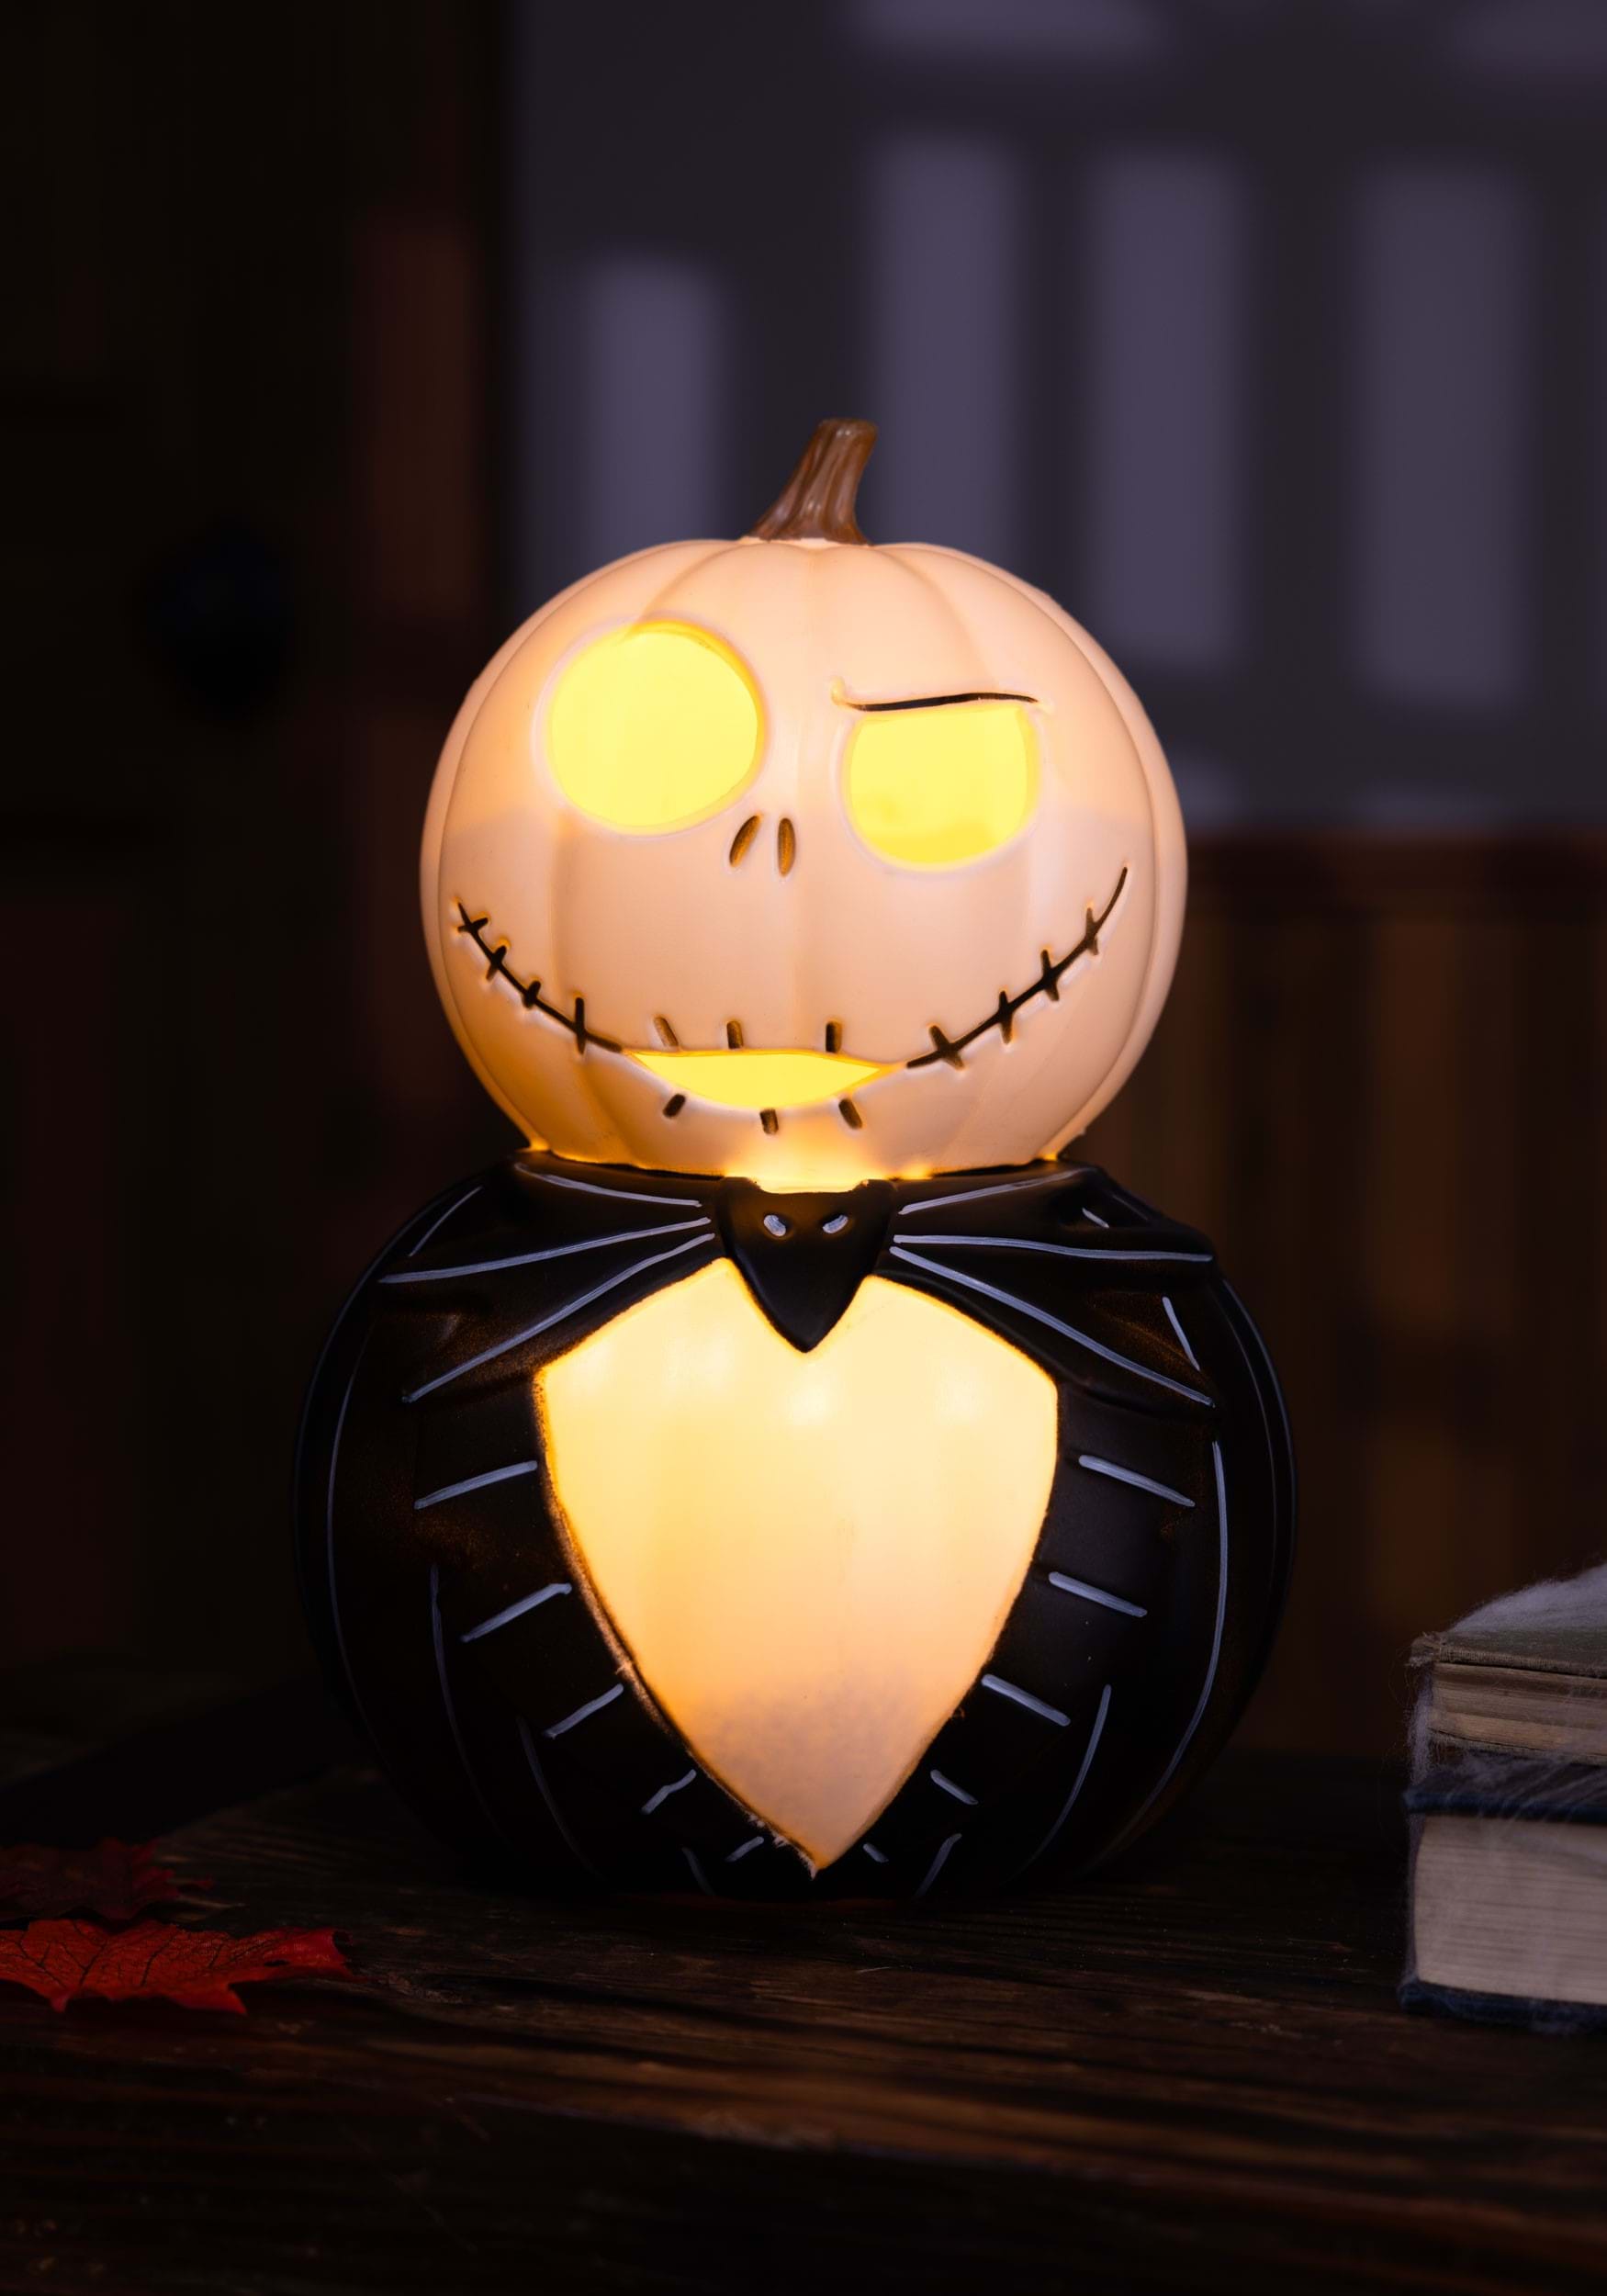 8.25 Jack Skeleton Light Up Pumpkin Halloween Decoration